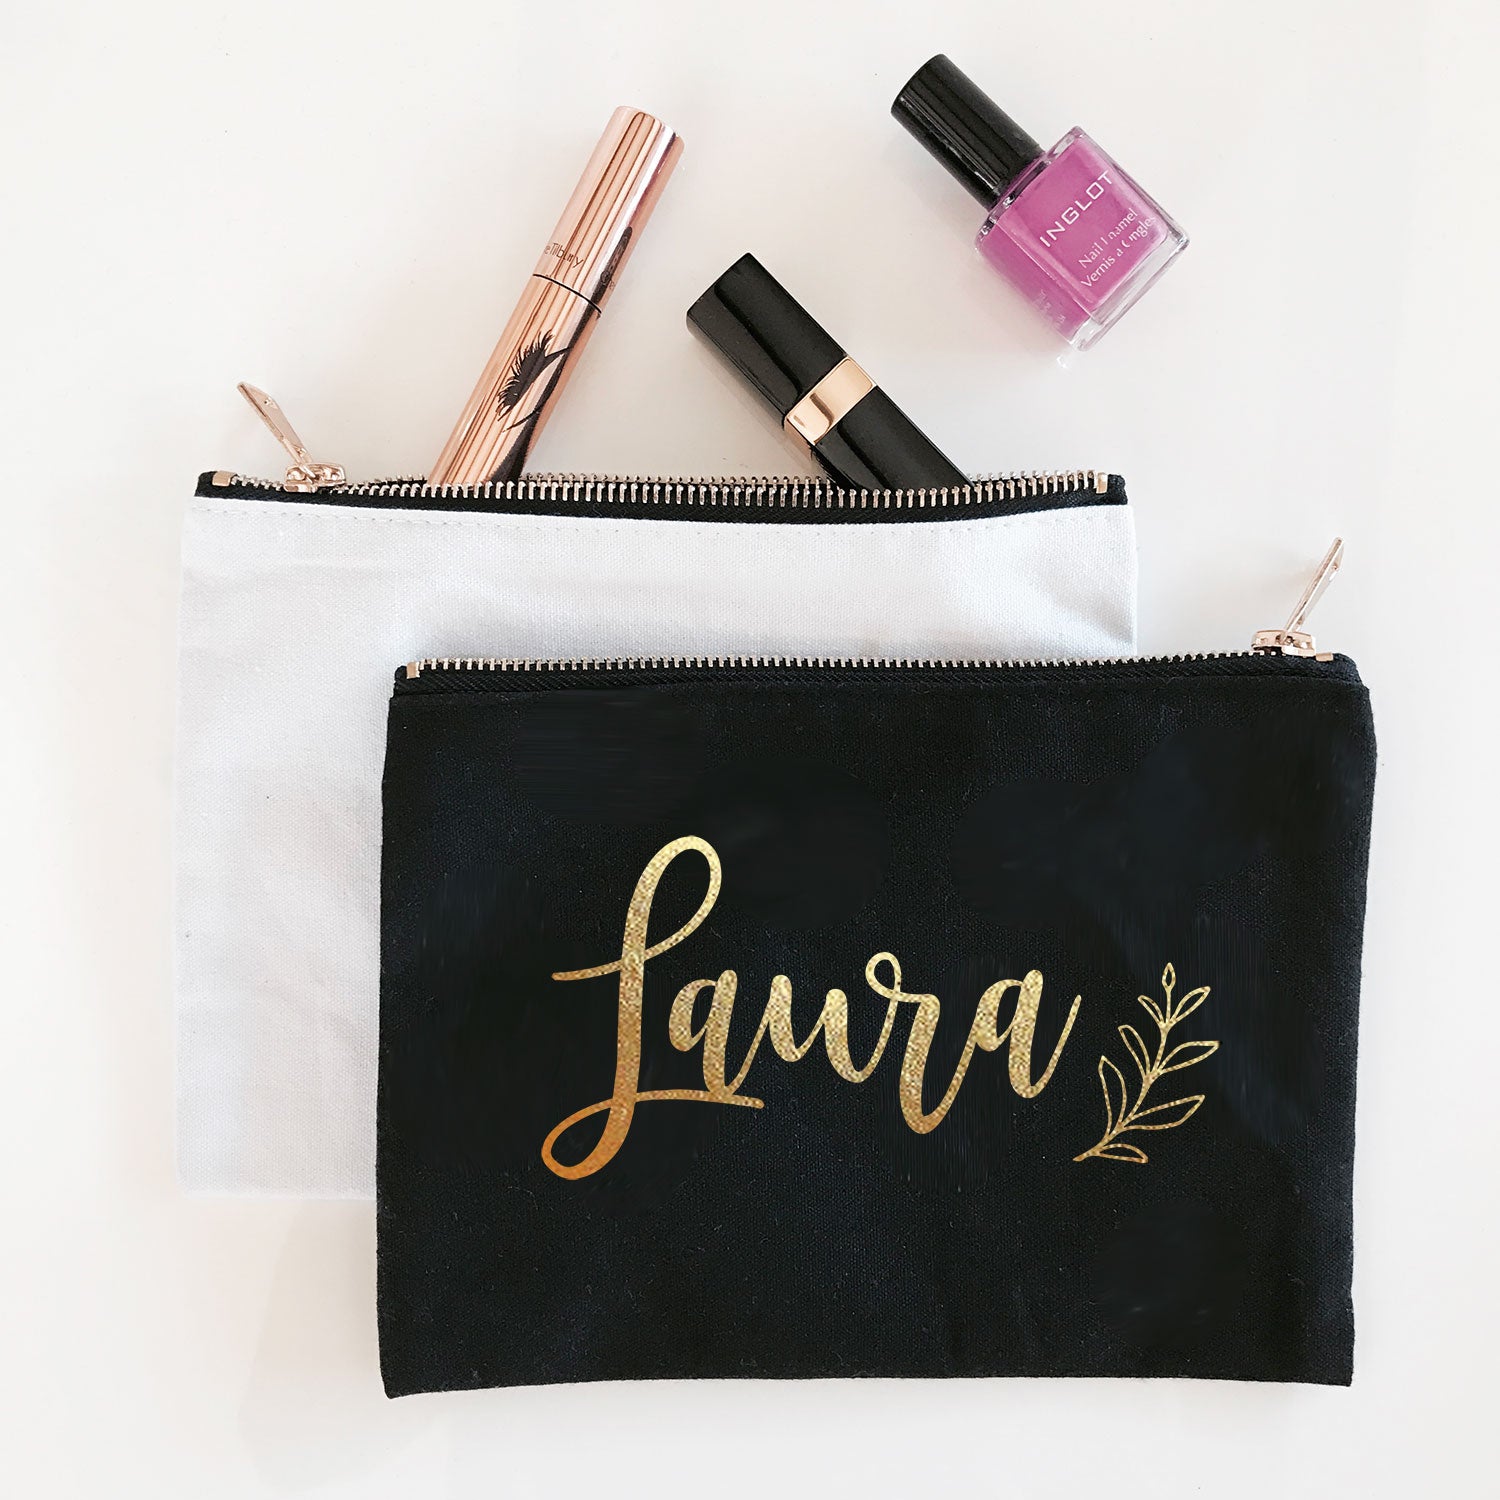 Custom Bridesmaid Gift Makeup Bag with Name